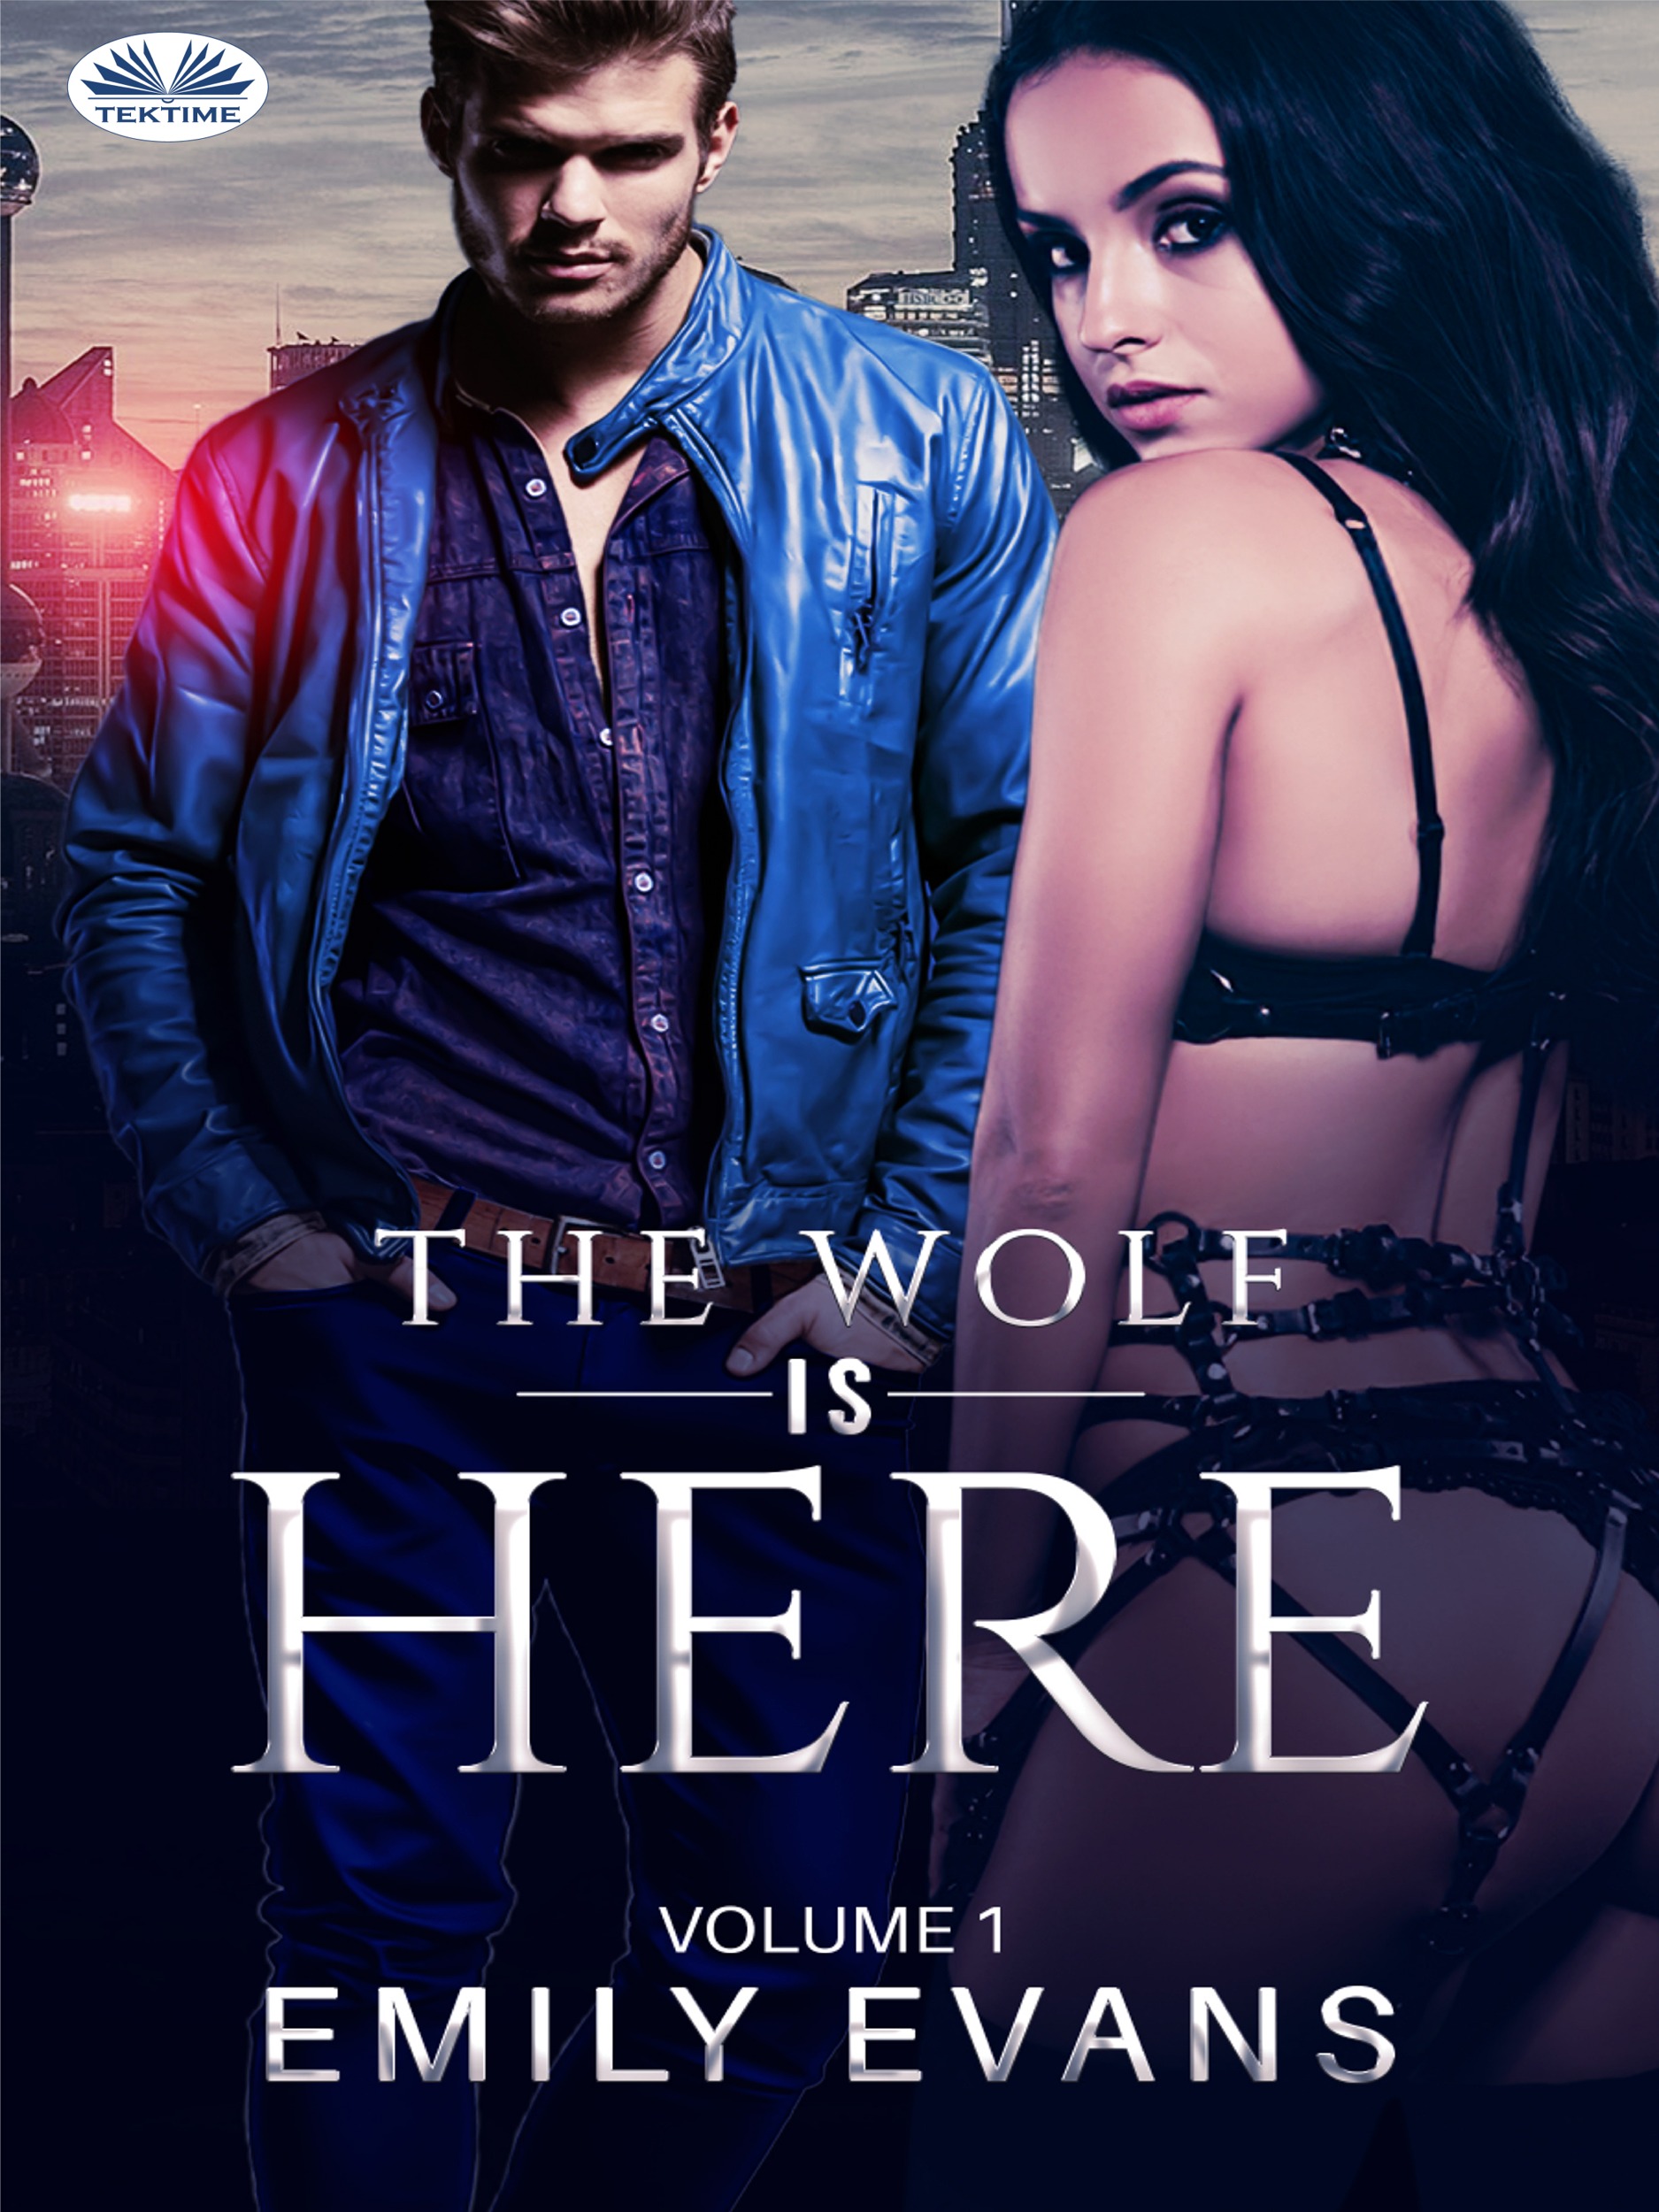 The Wolf Is There (Volume 1)-The Wolf Is There (Volume 1)